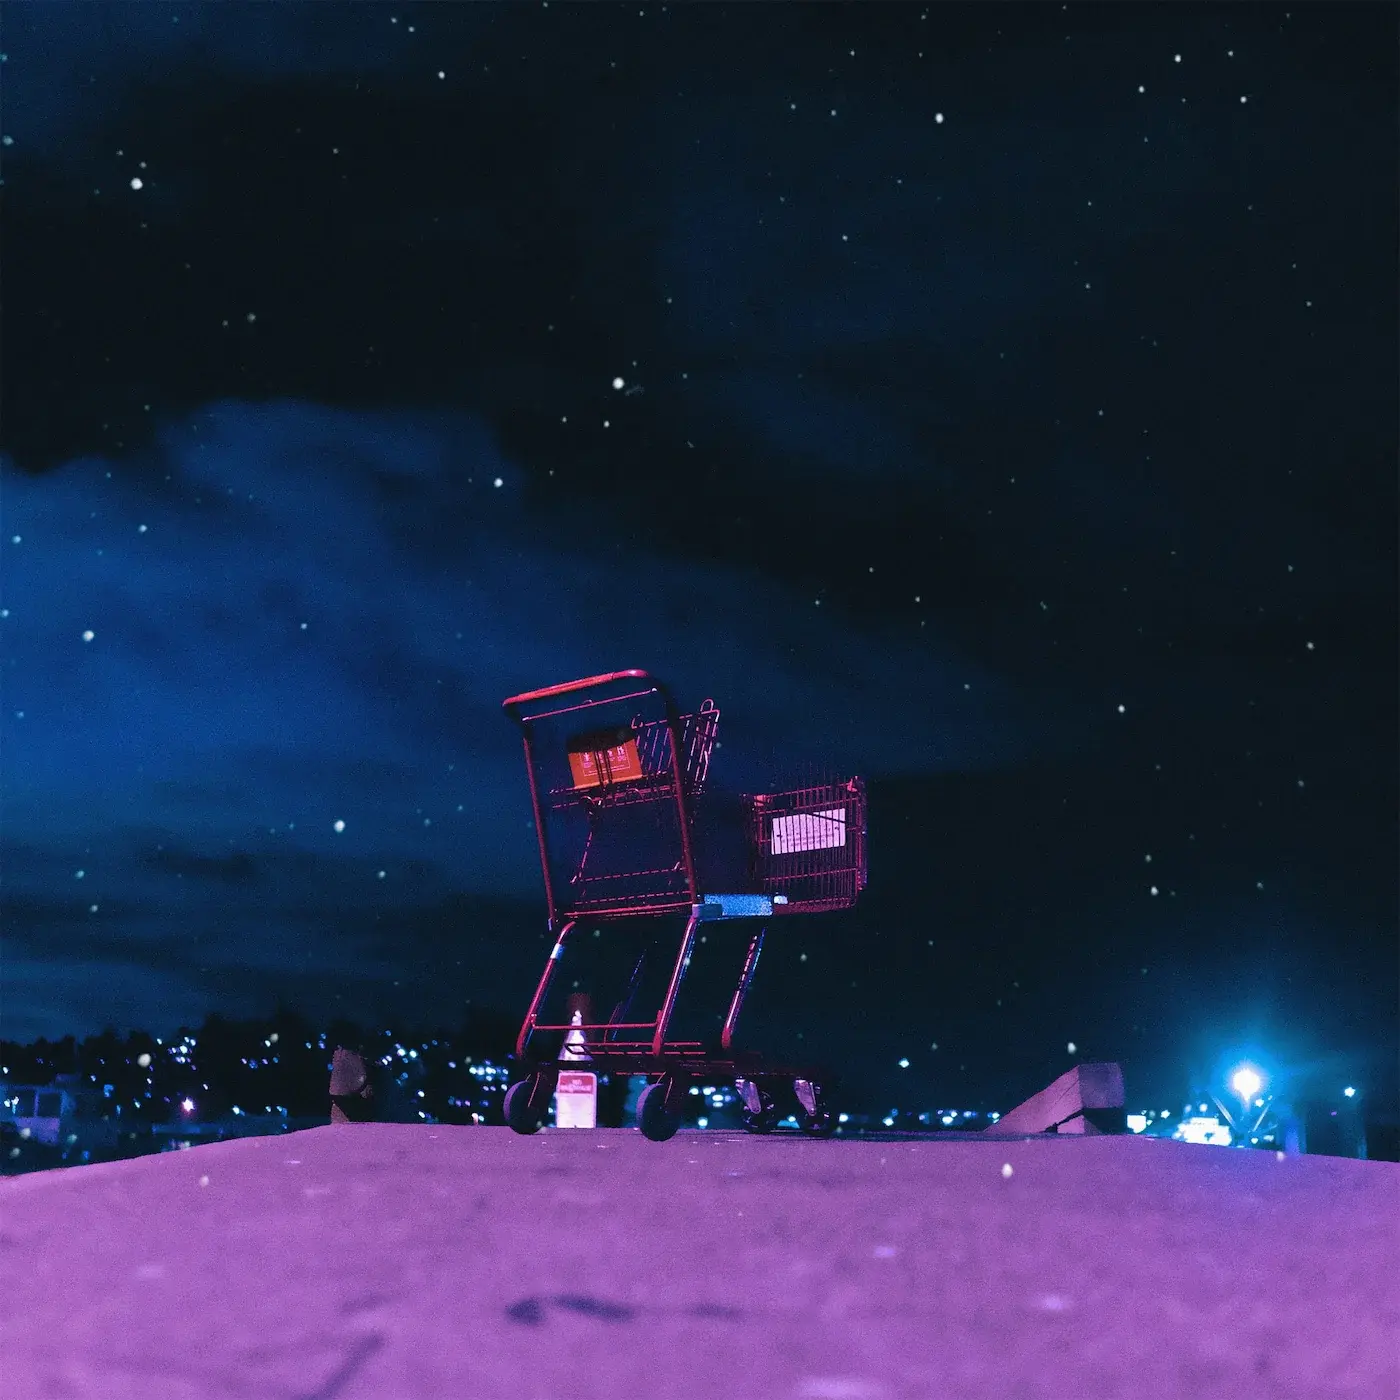 Ein Einkaufswagen steht auf auf einem lila farbenden Planeten und schaut in den dunkel blauen Sternenhimmel.